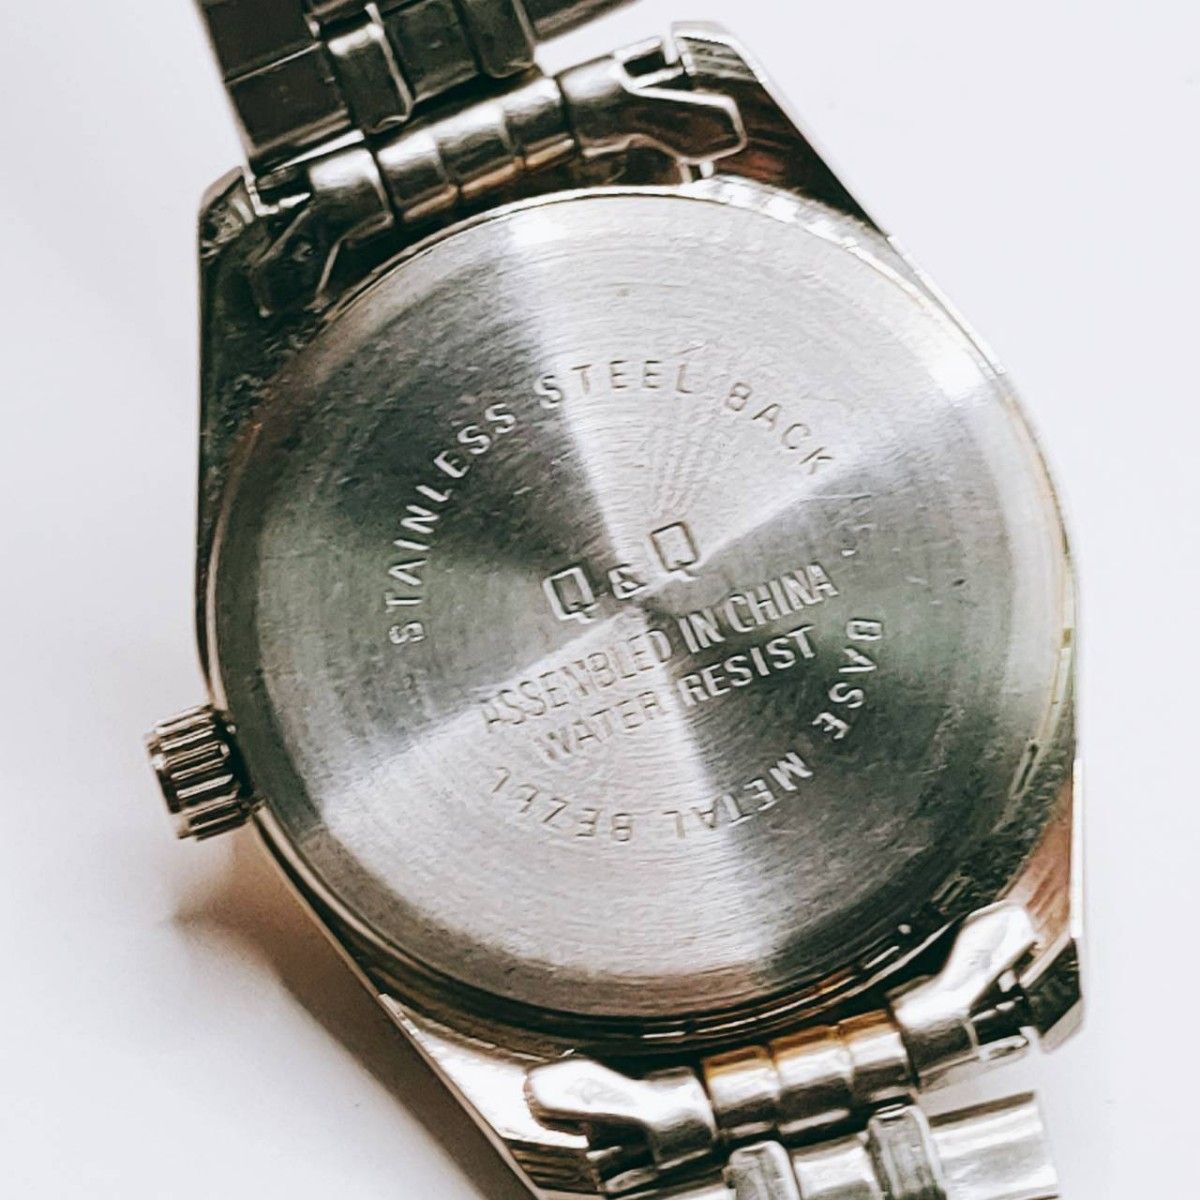 #7 Falcon ファルコン 腕時計 クウォーツ 3針 金色文字盤 シルバー基調 時計 とけい トケイ アクセサリー レトロ